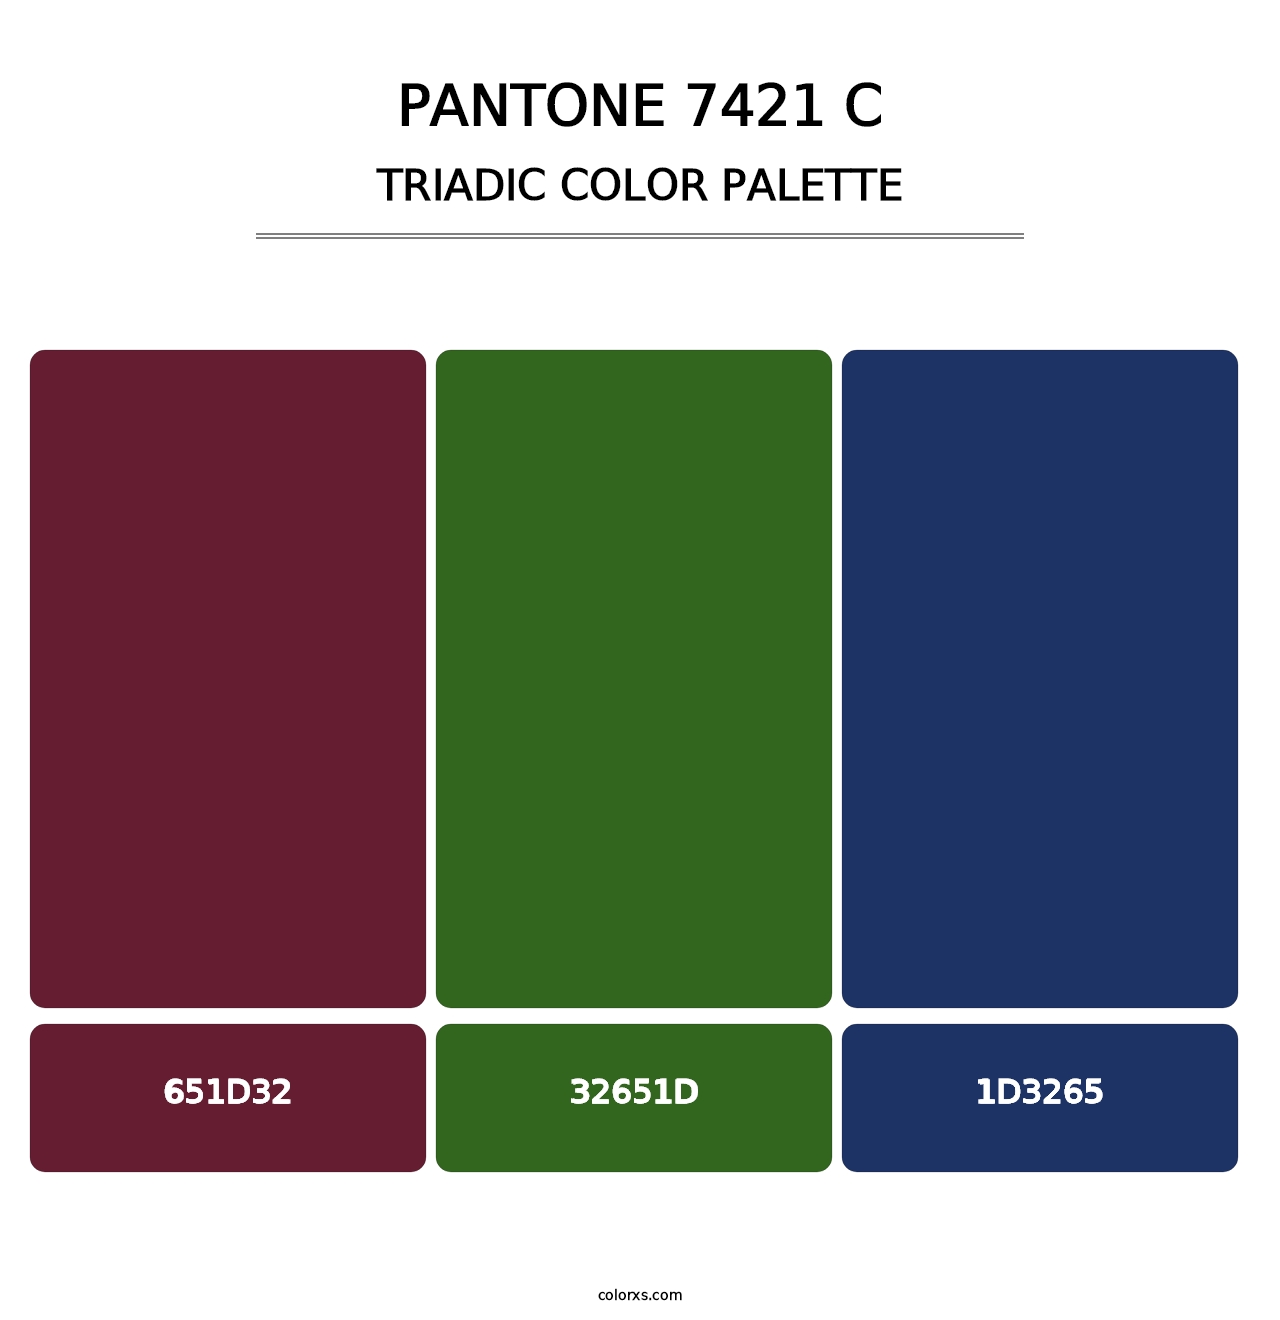 PANTONE 7421 C - Triadic Color Palette